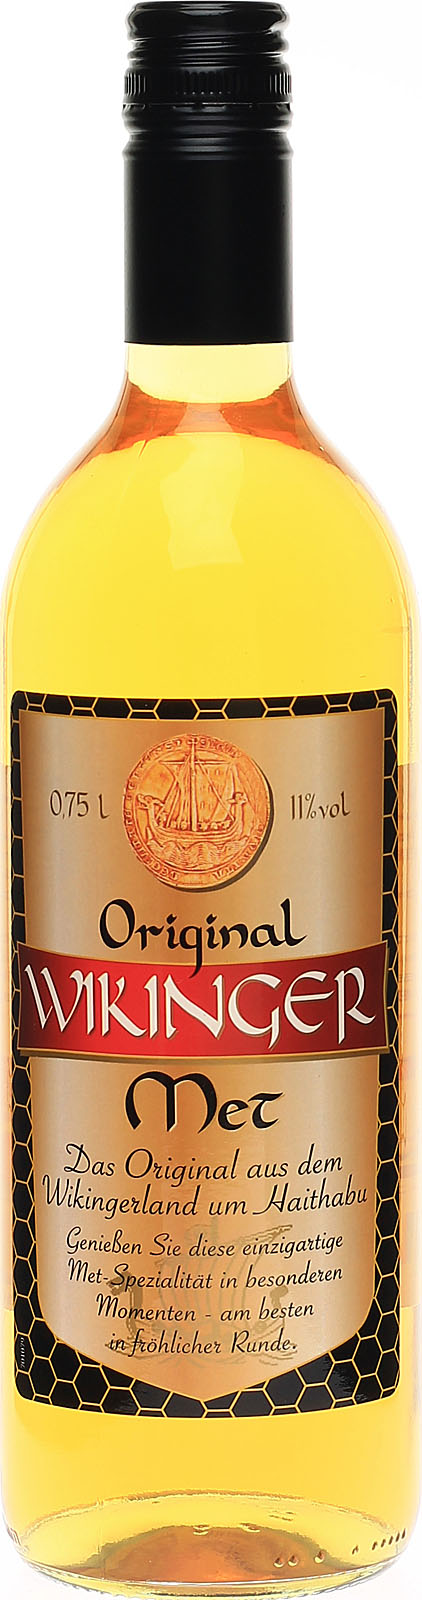 Wikinger Met nach Honigwein, Original, überl köstlicher